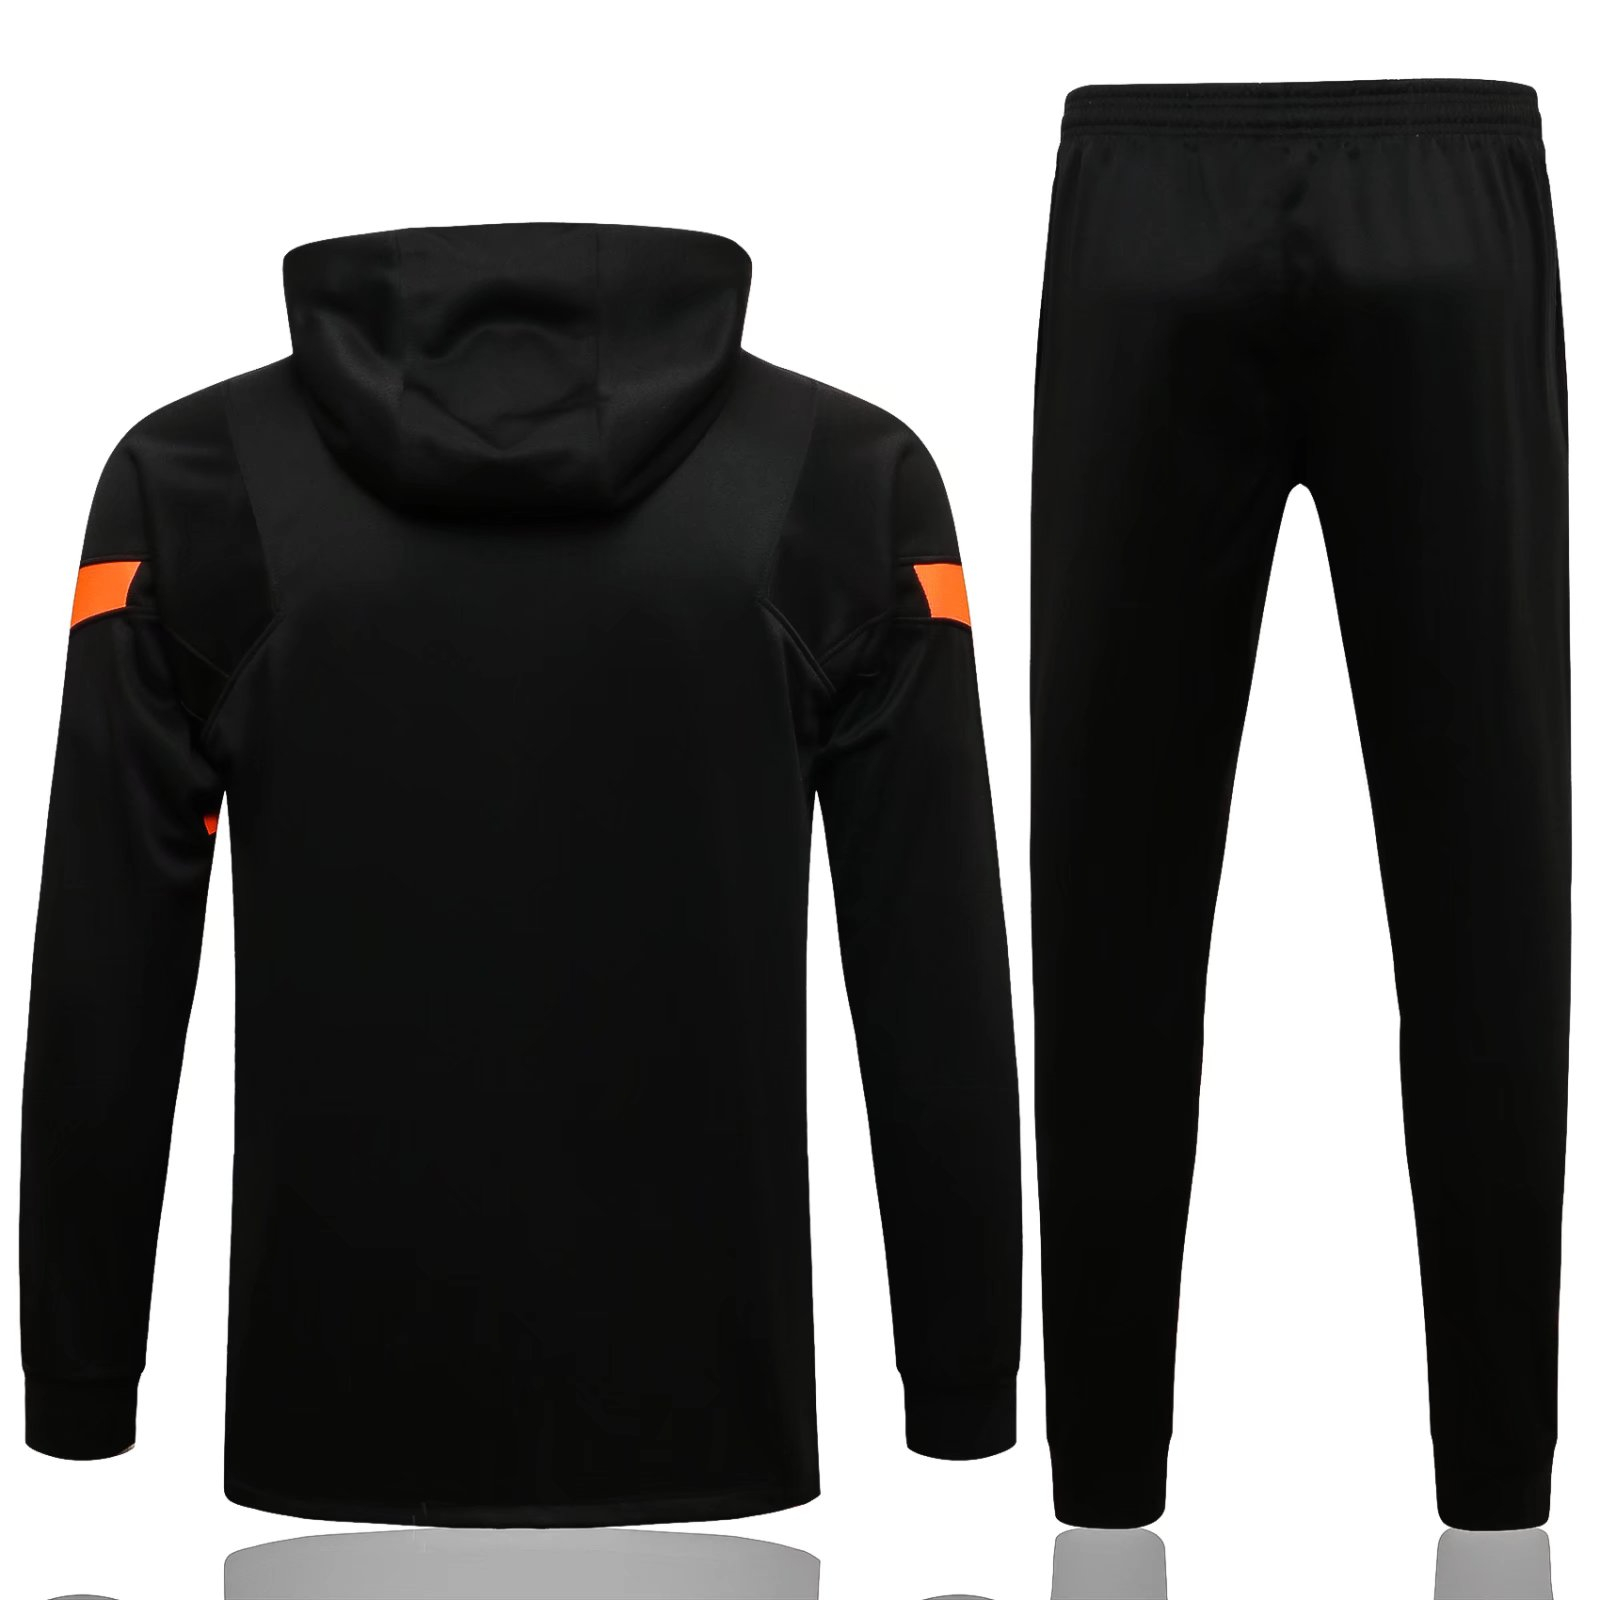 Chelsea Soccer Training Suit Jacket + Pants Hoodie Black - Orange Men's 2021/22